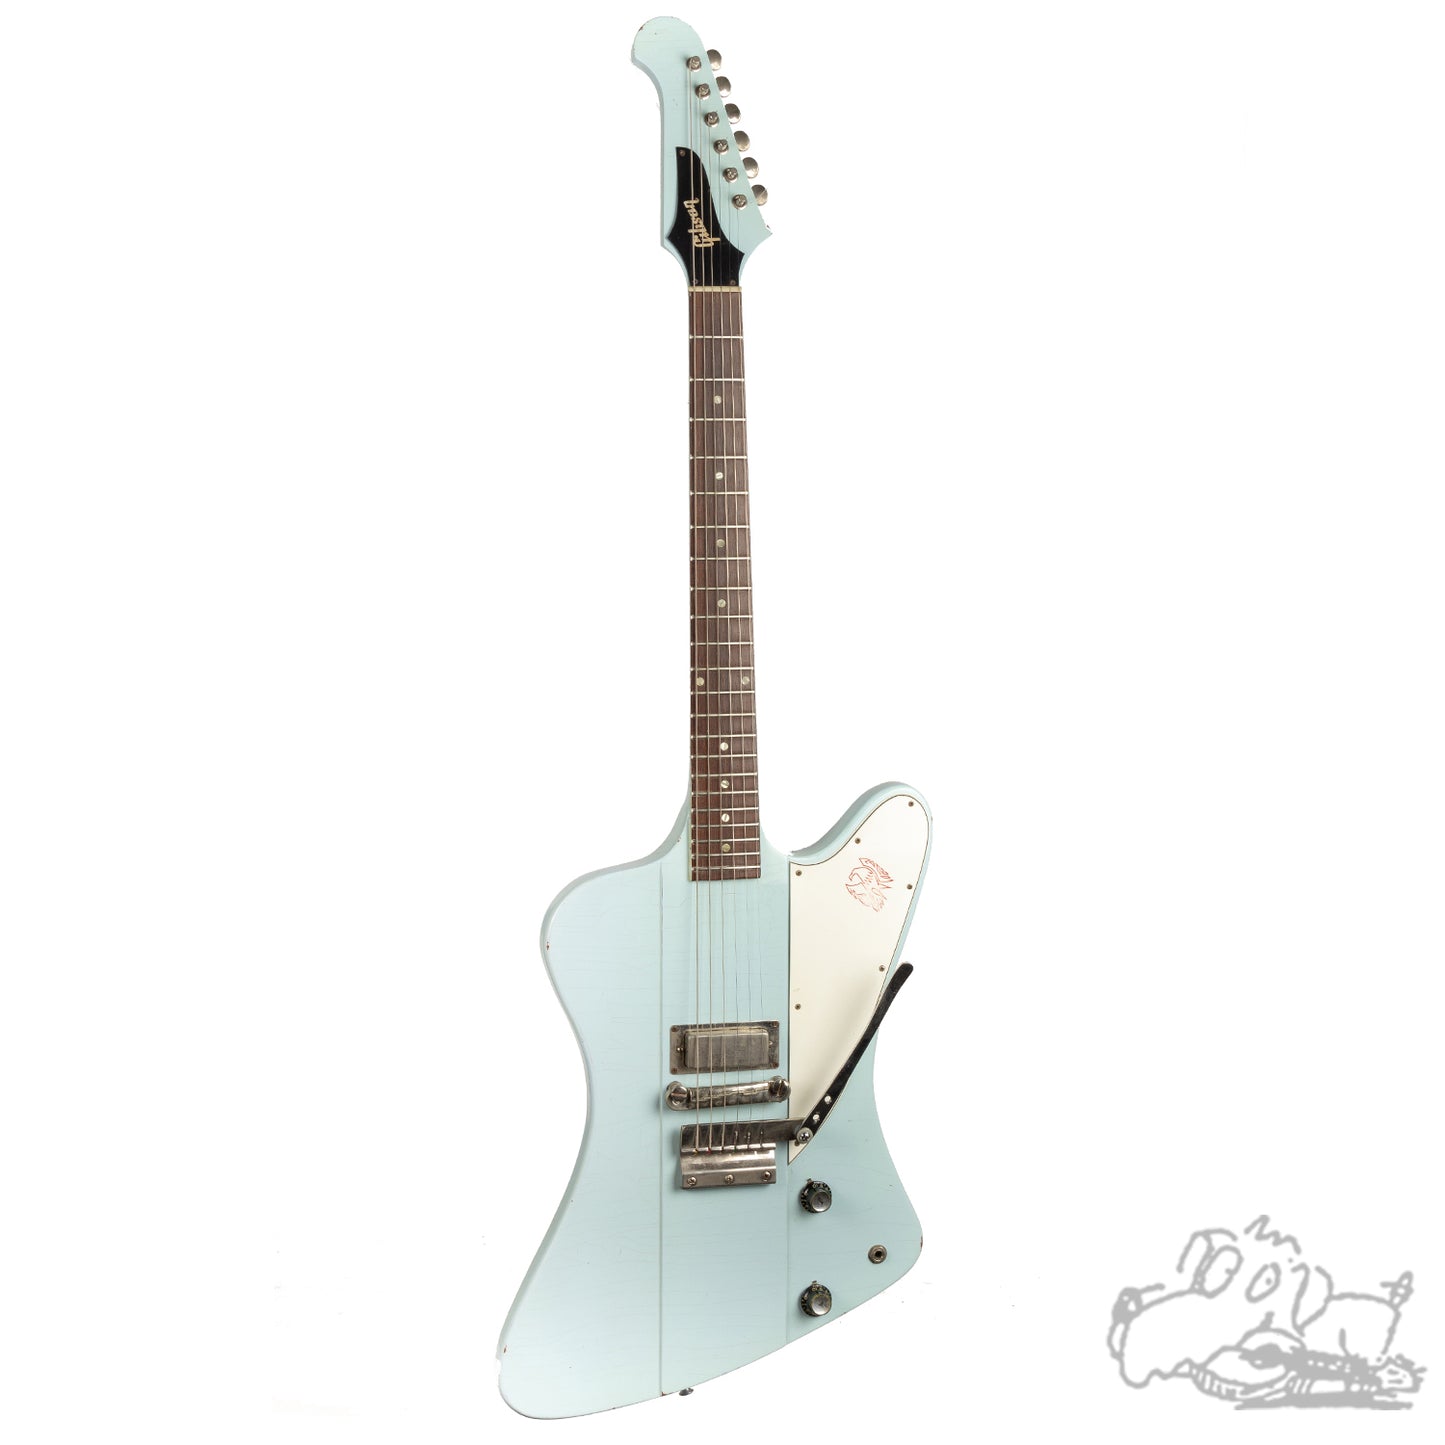 1965 Gibson Firebird I